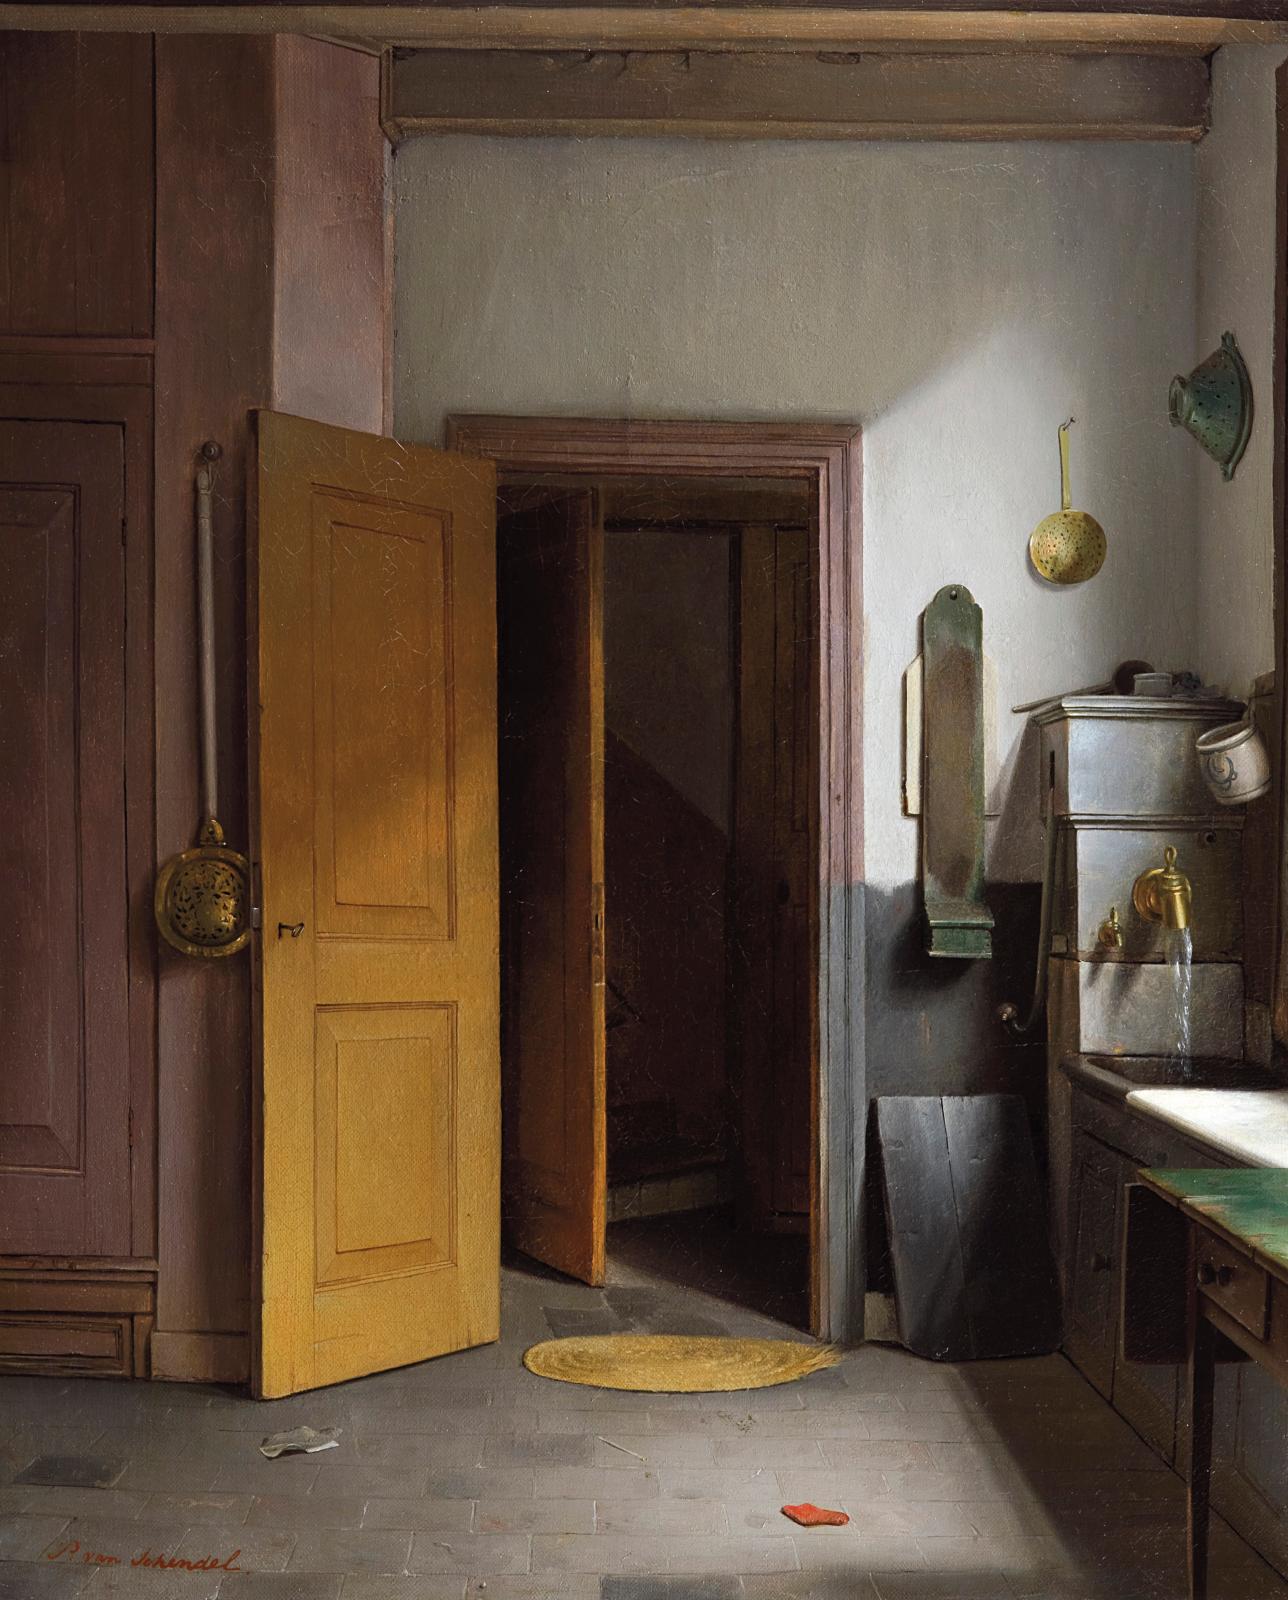 Petrus Van Schendel (1806-1870), Intérieur de la cuisine de l’artiste, vers 1835, huile sur toile, 66,5 x 53,7 cm. Acquis en 2015. © Fonda